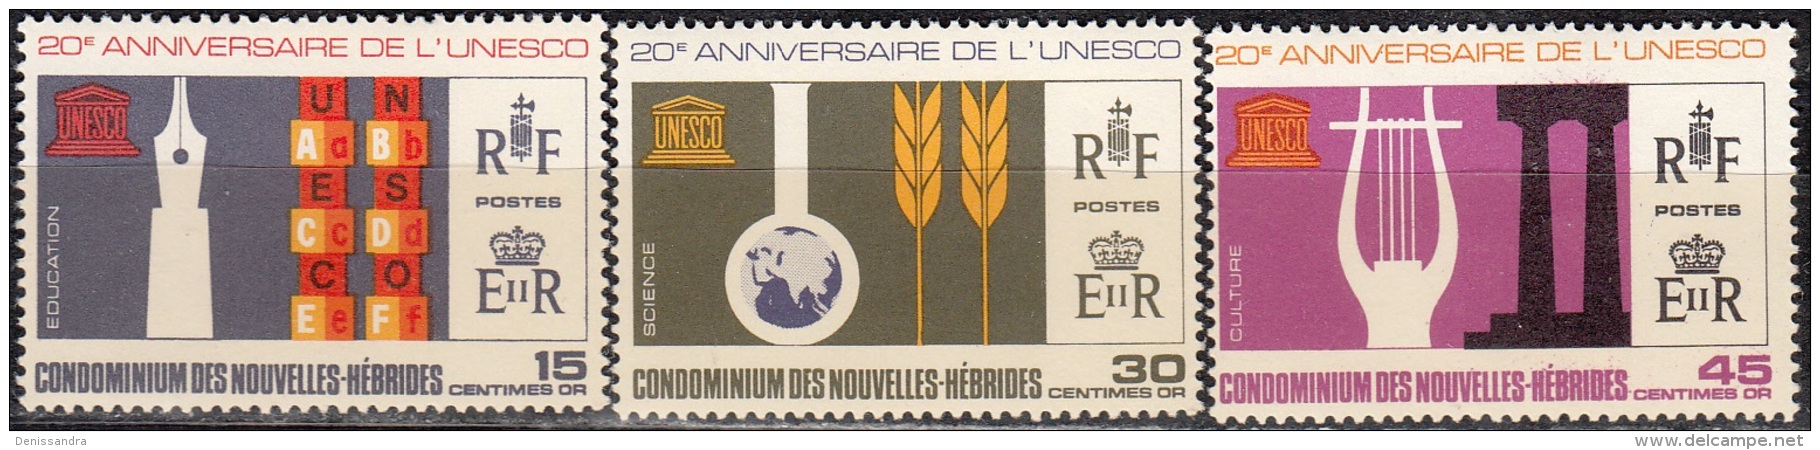 Nouvelles Hebrides 1966 Michel 251 - 253 Neuf ** Cote (2005) 6.00 Euro 20 Ans UNESCO - Ungebraucht